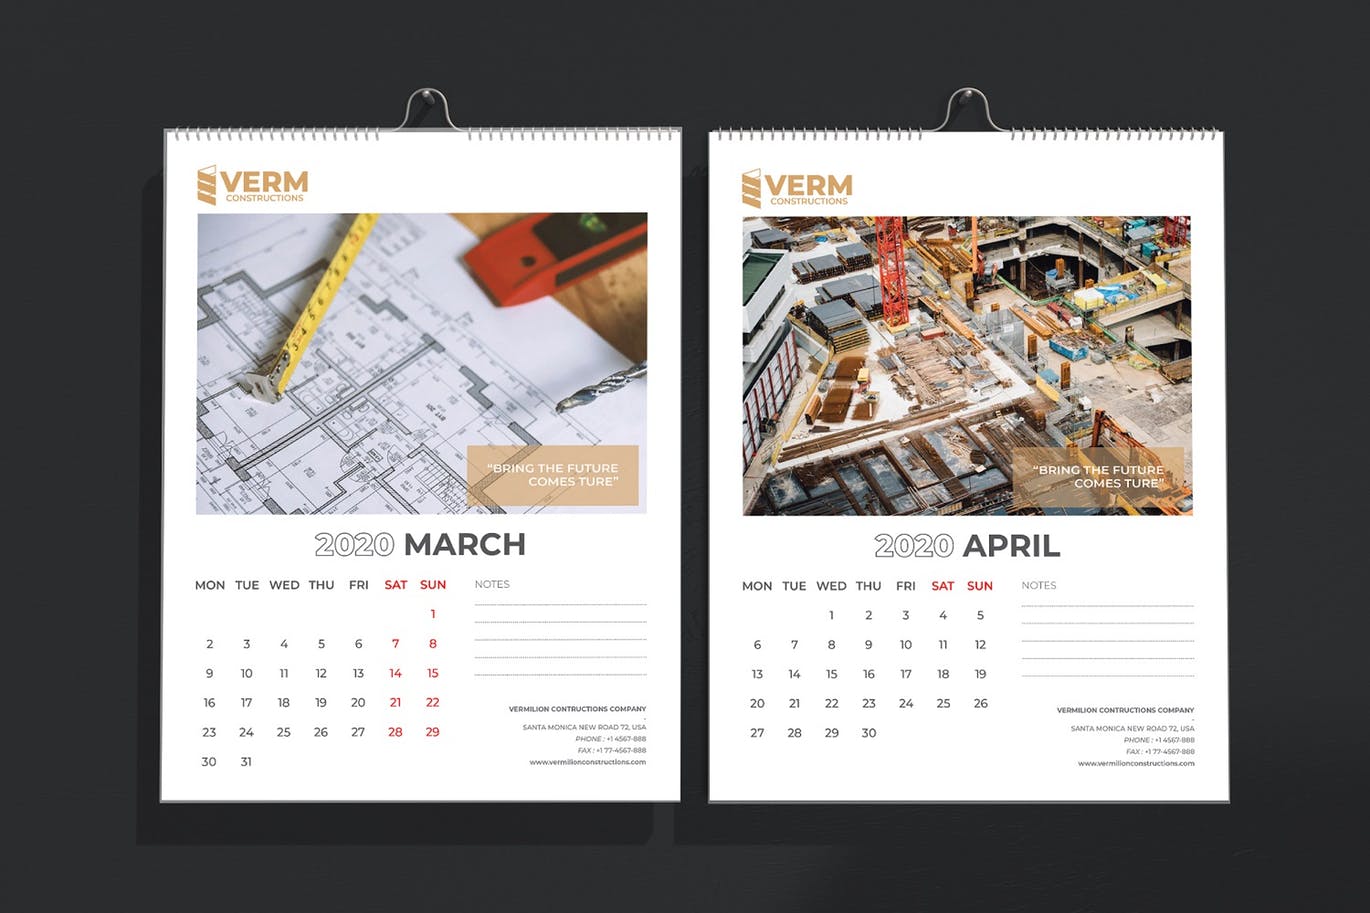 2020年建筑主题台历&挂墙日历表设计模板 Construction Wall & Table Calendar 2020插图(4)